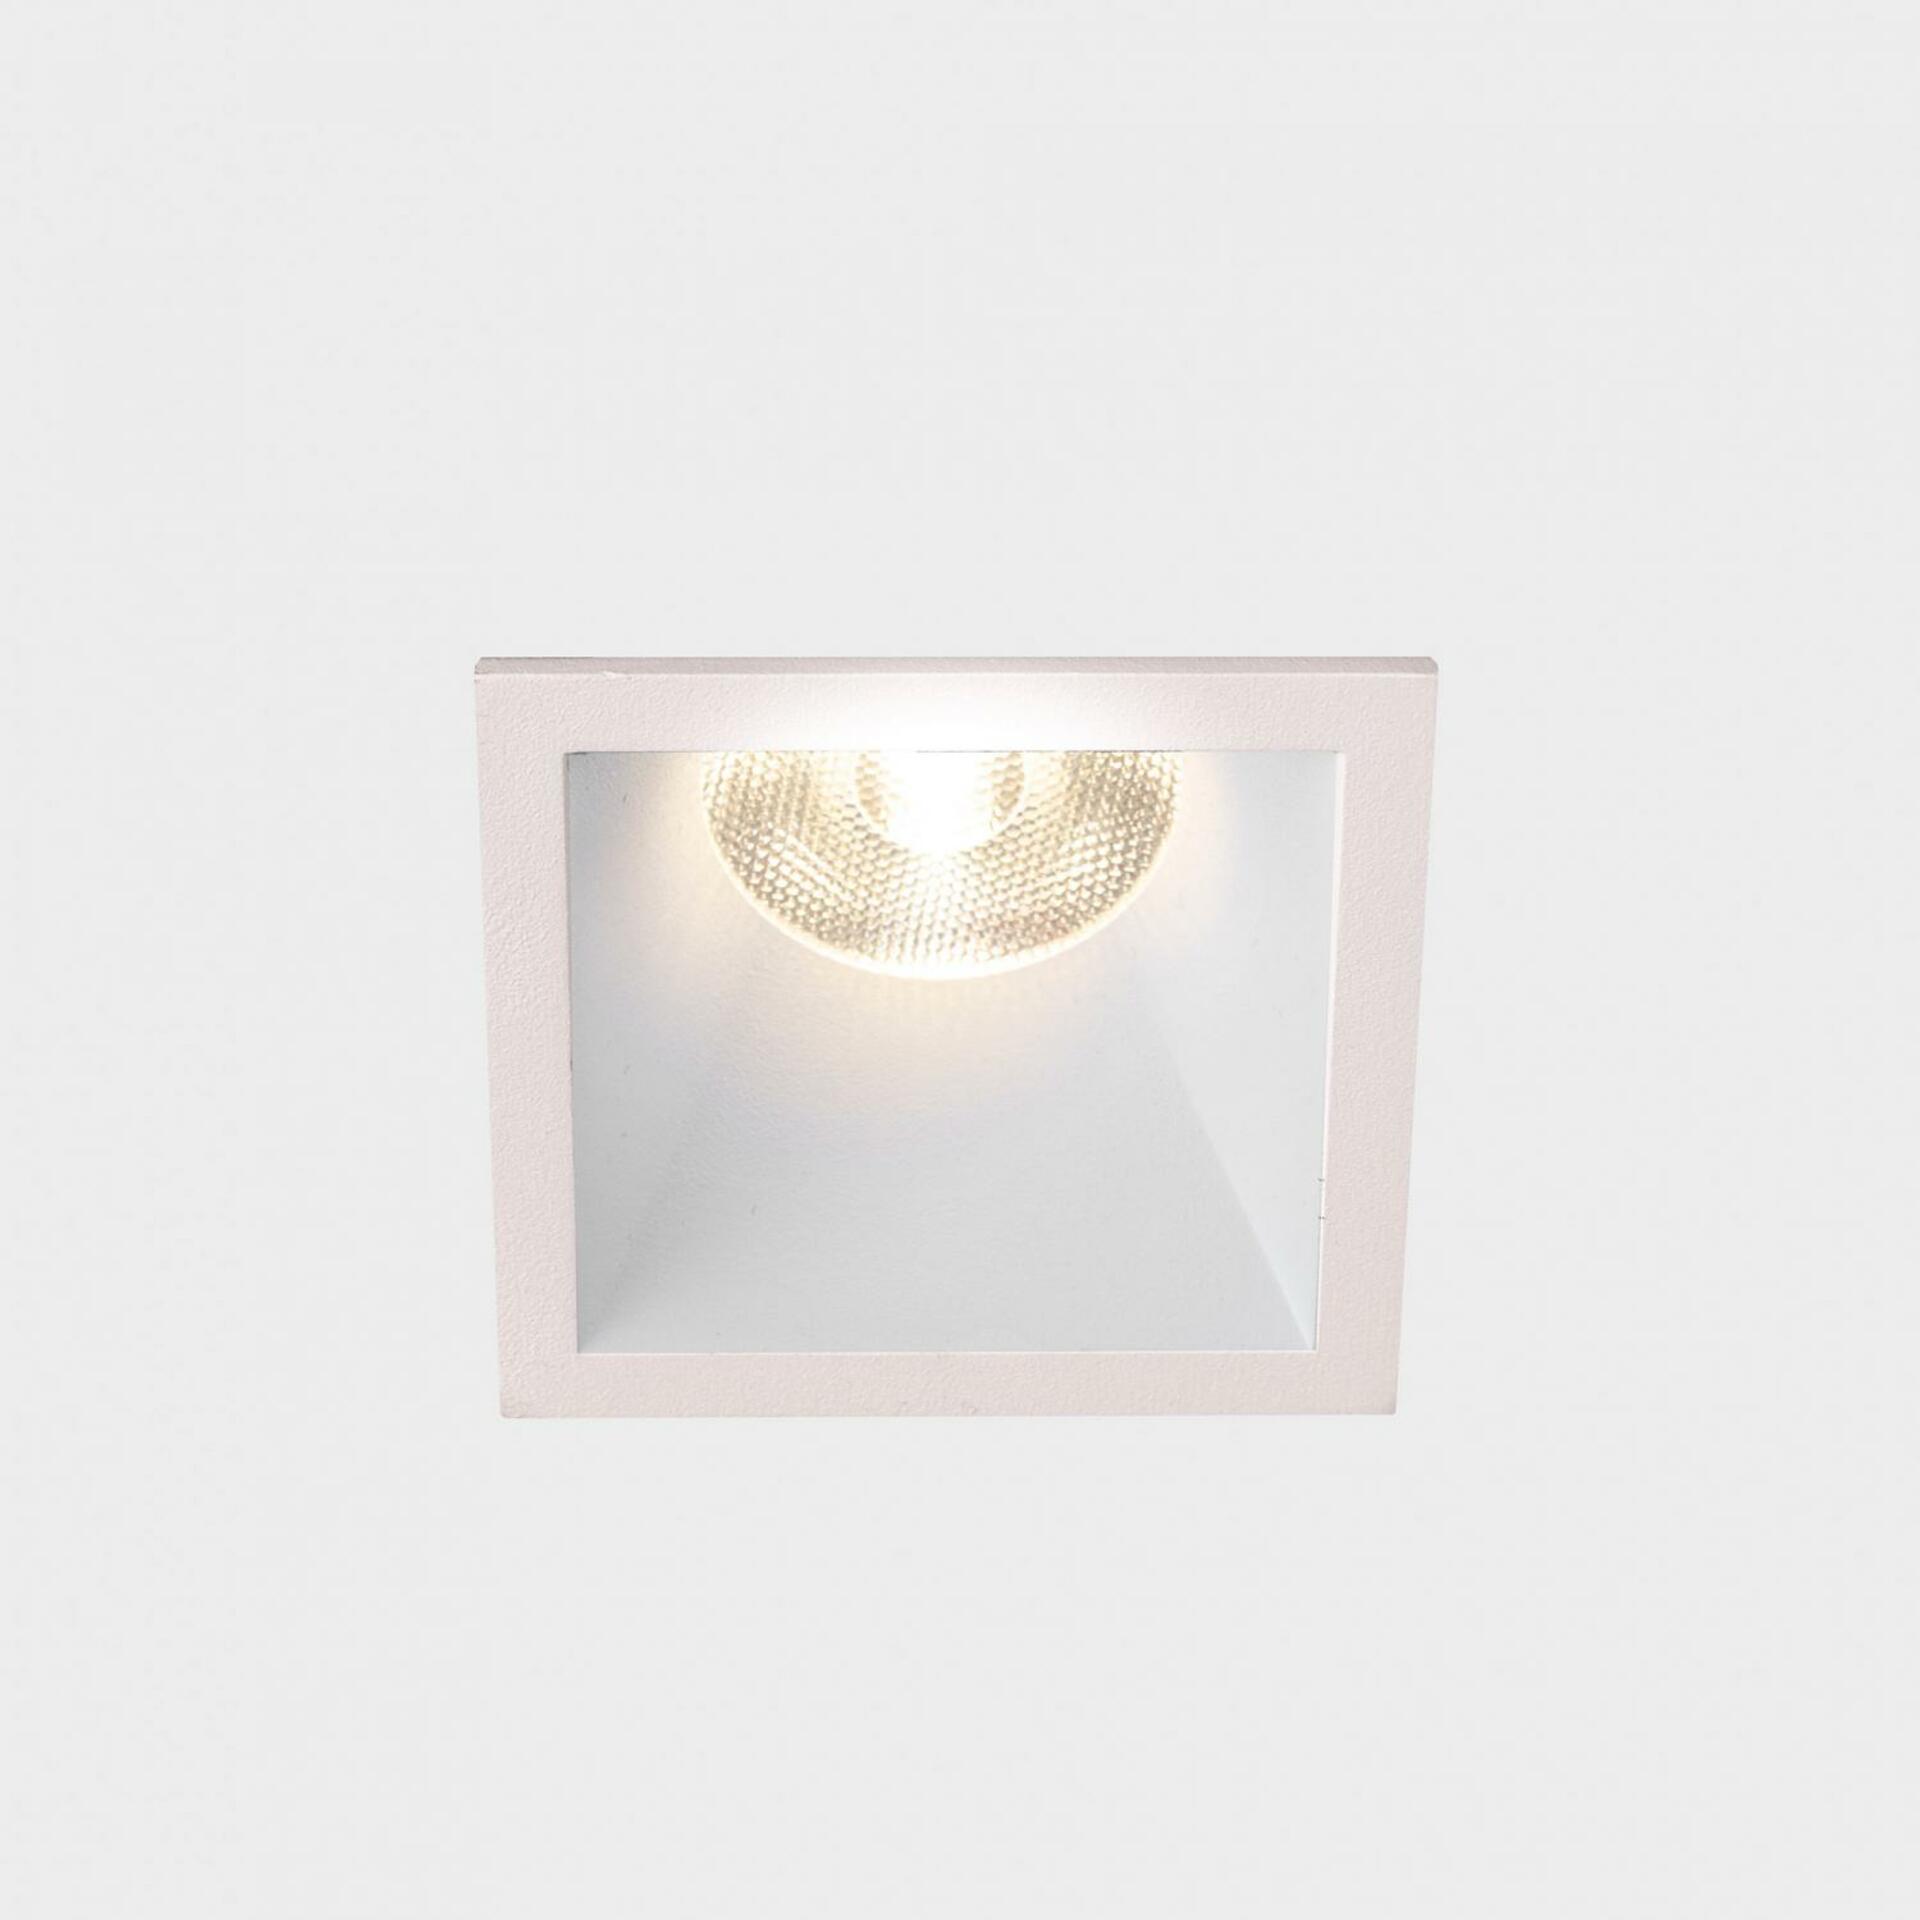 KOHL LIGHTING KOHL-Lighting VERSUS MUZZY SQ zapuštěné svítidlo s rámečkem 56x56mm bílá 25° 9 W CRI 80 2700K 1.10V